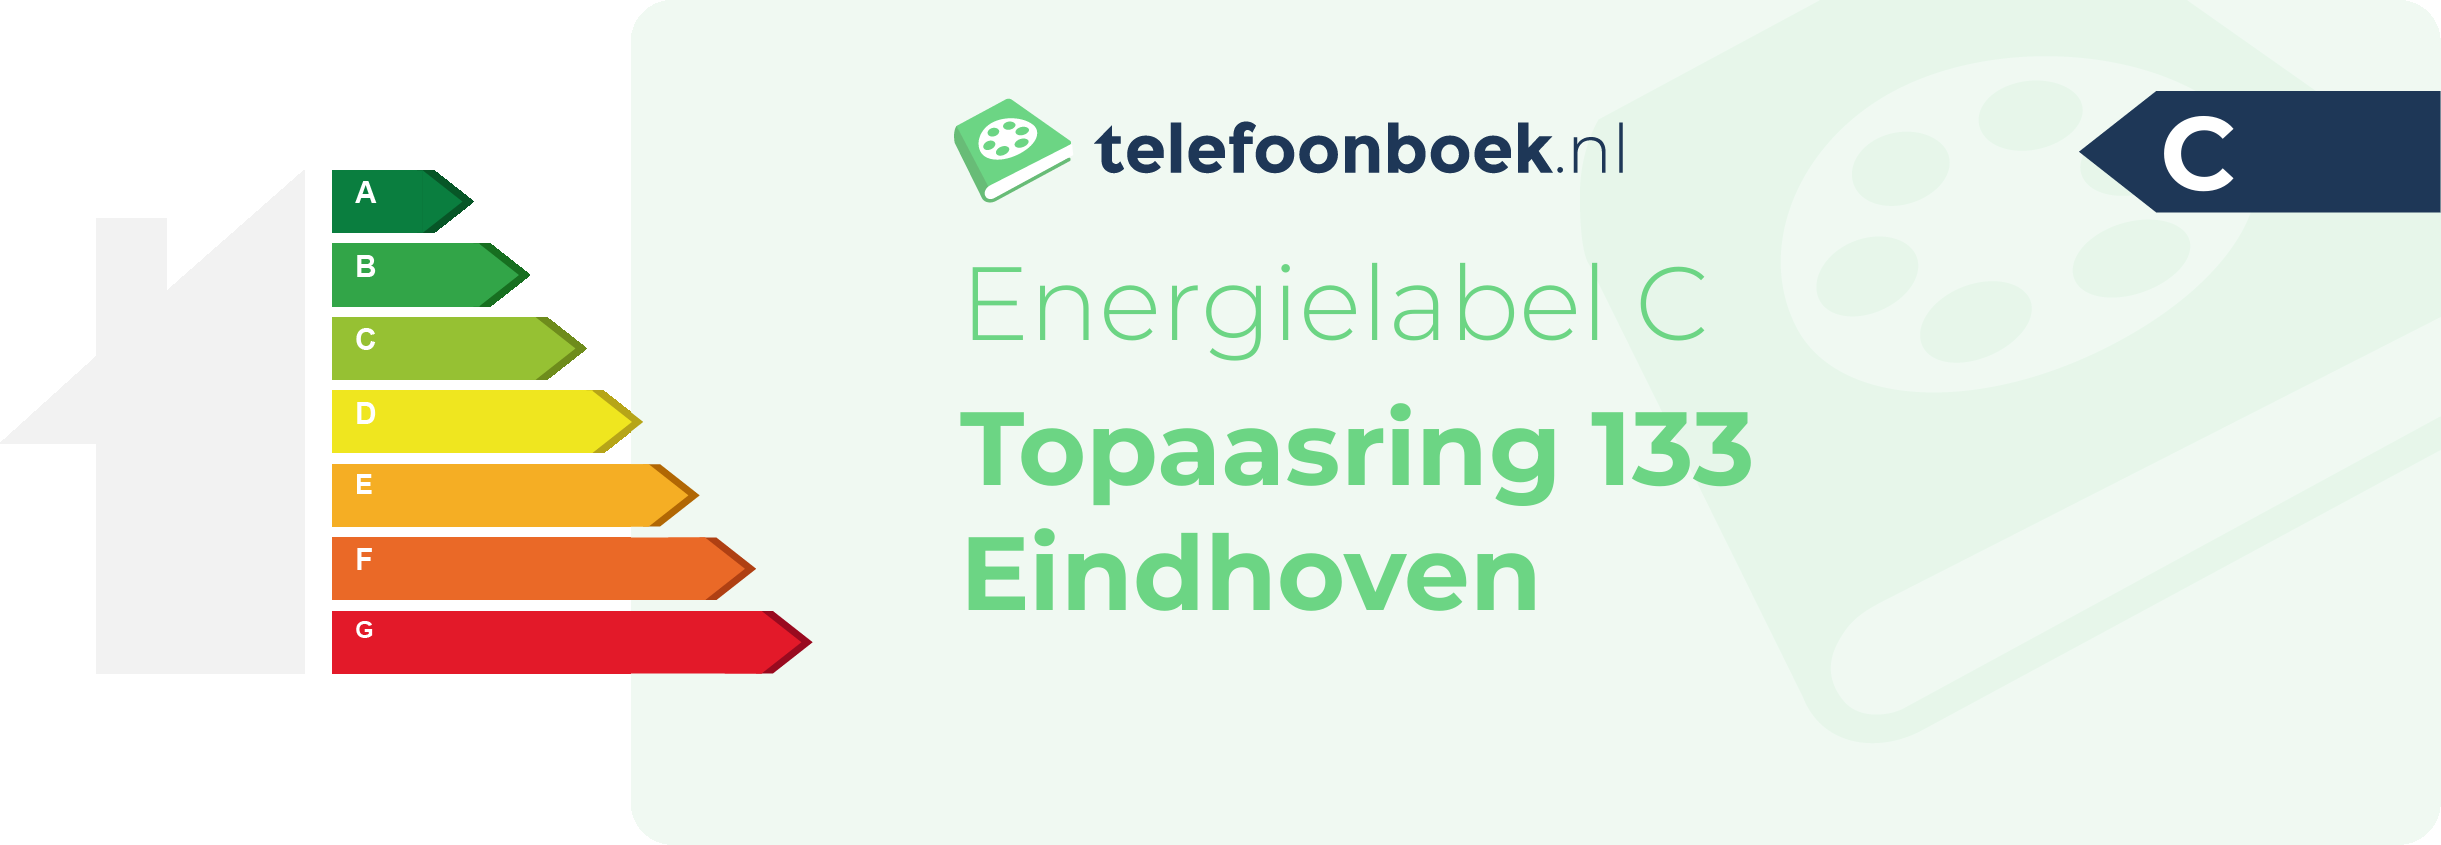 Energielabel Topaasring 133 Eindhoven